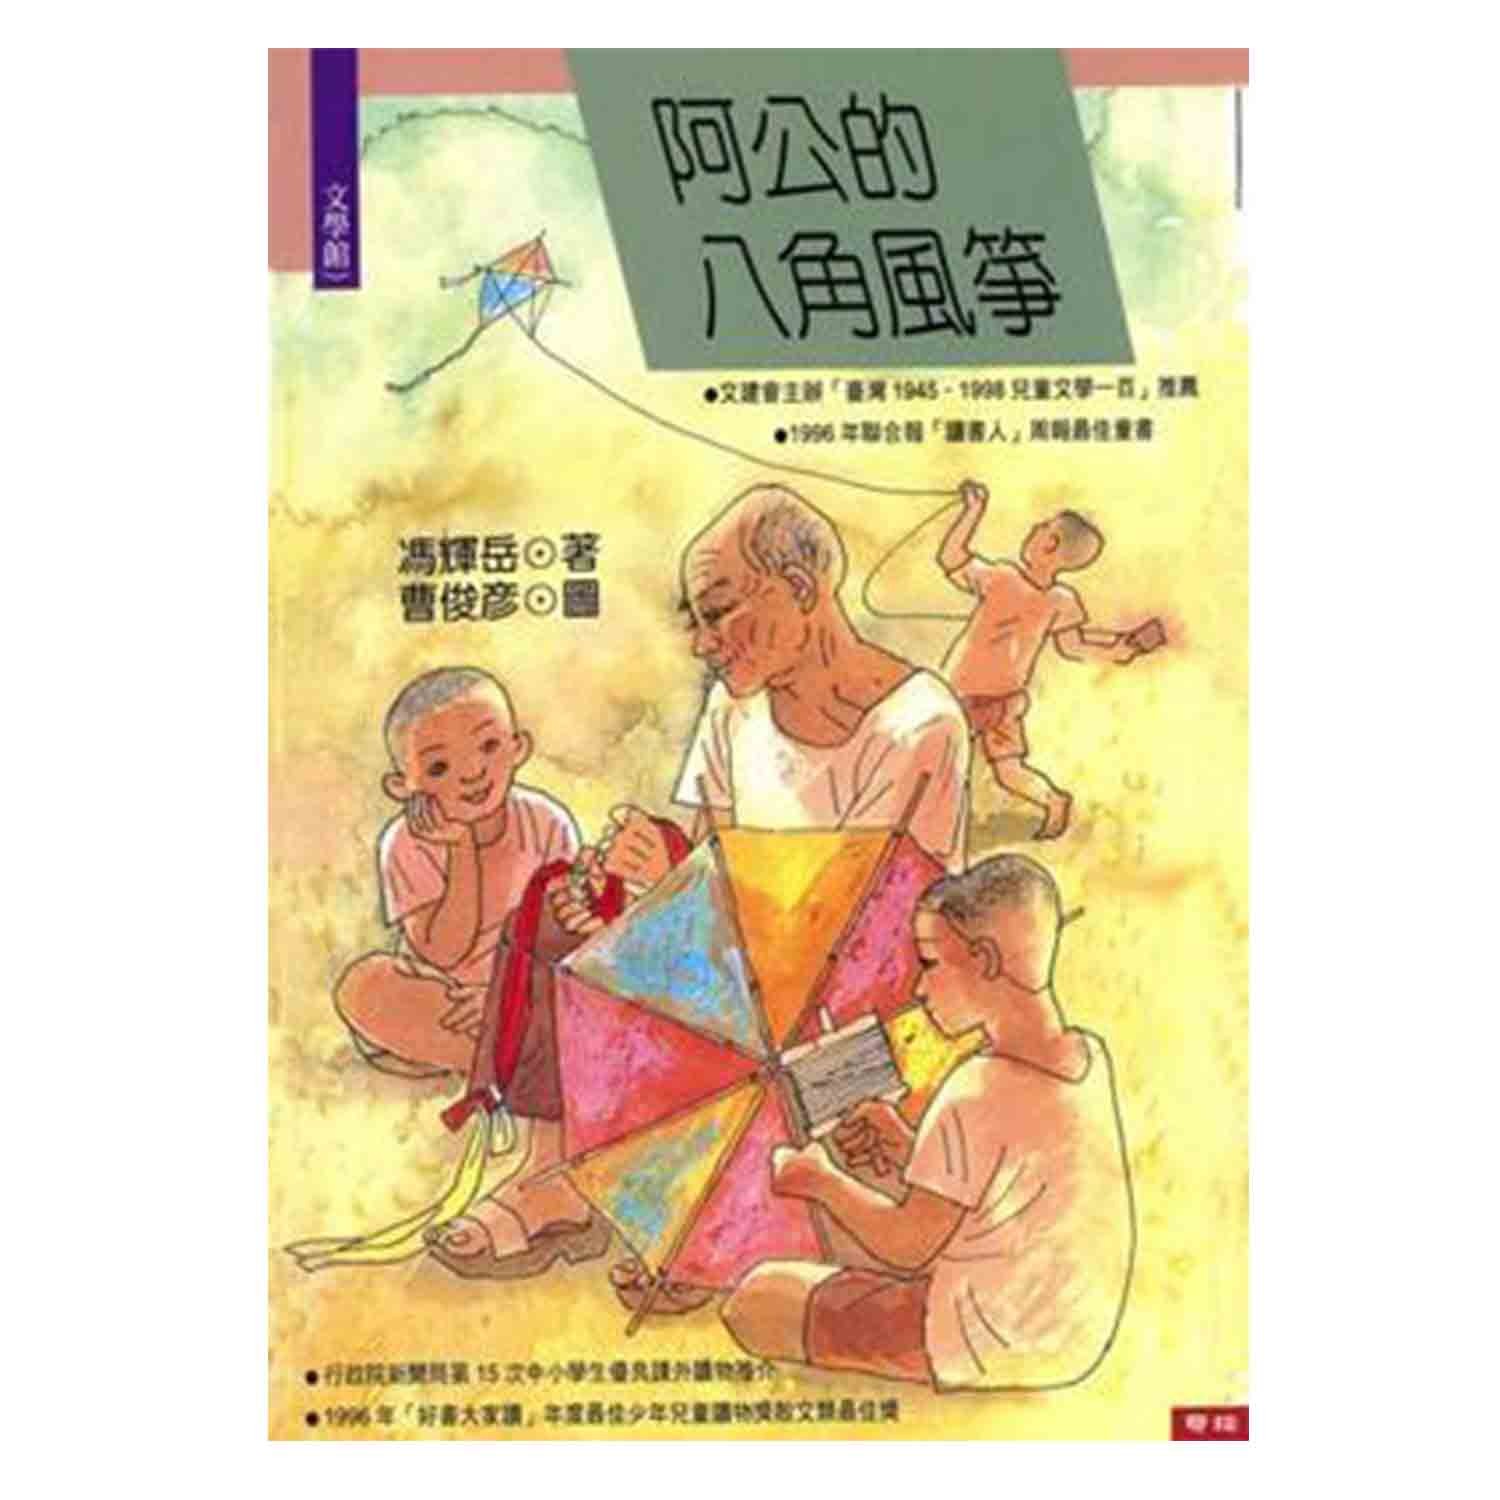 聯經出版 - 阿公的八角風箏